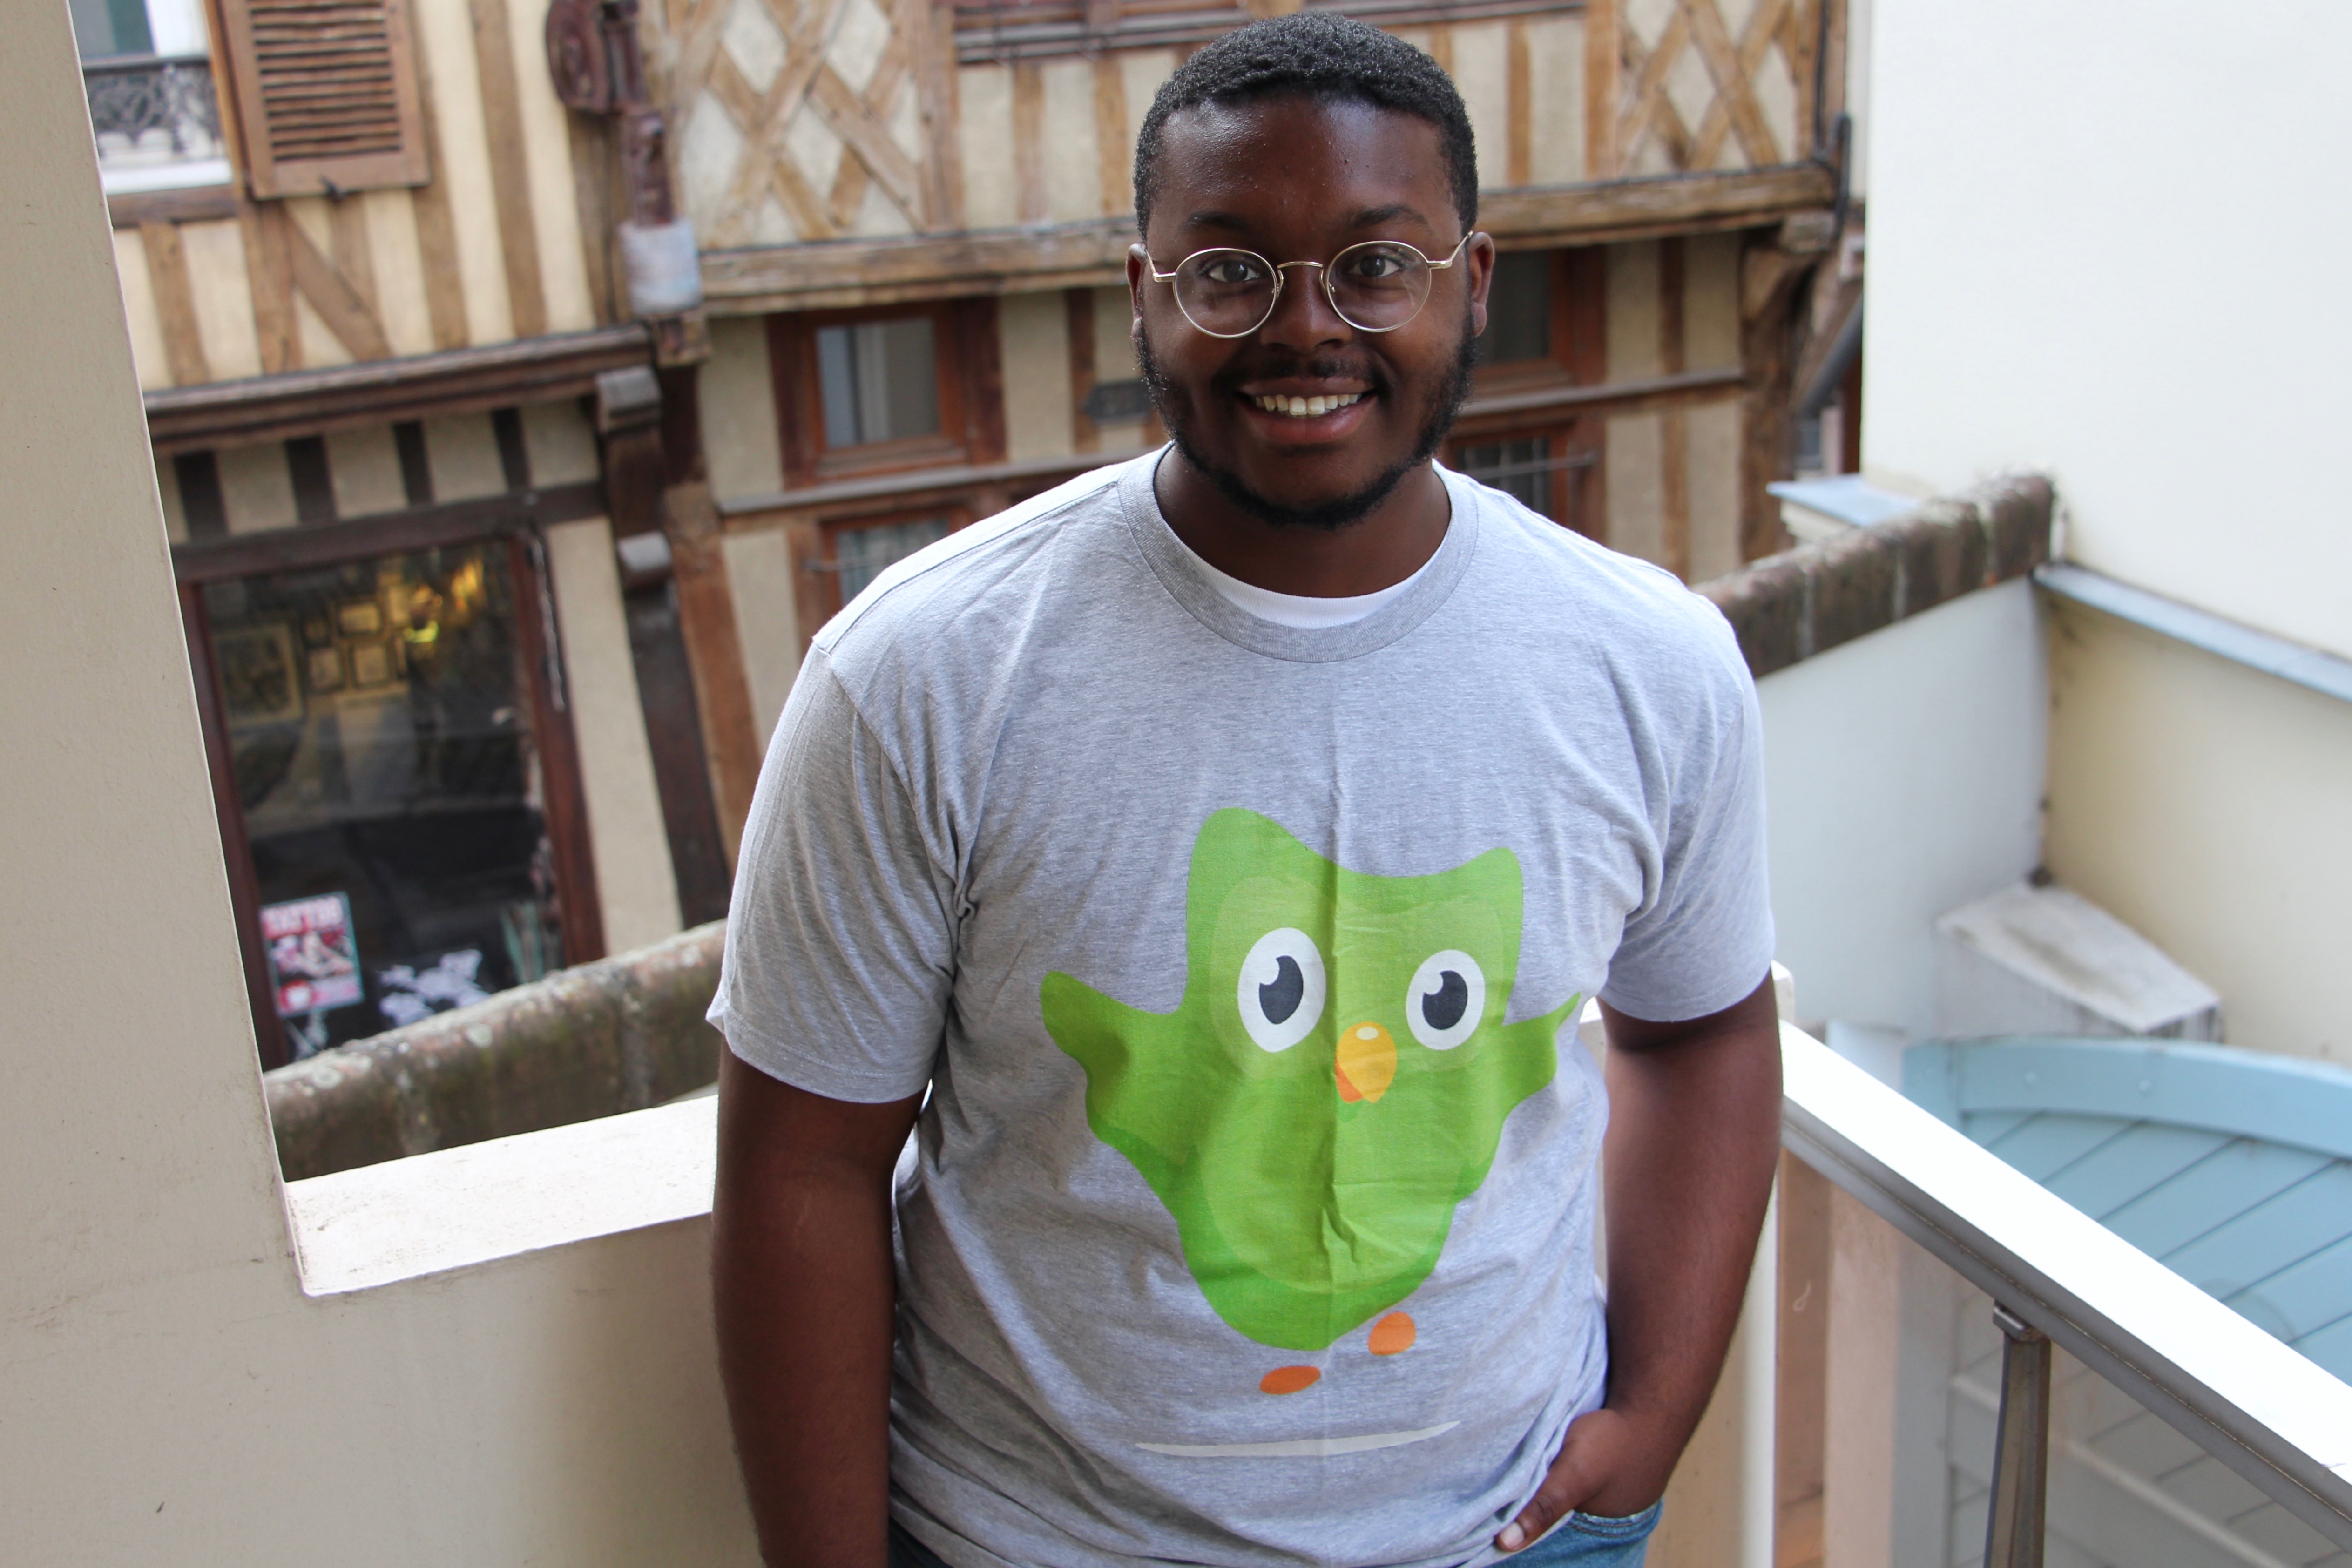 Jalen wearing a Duolingo shirt in France.